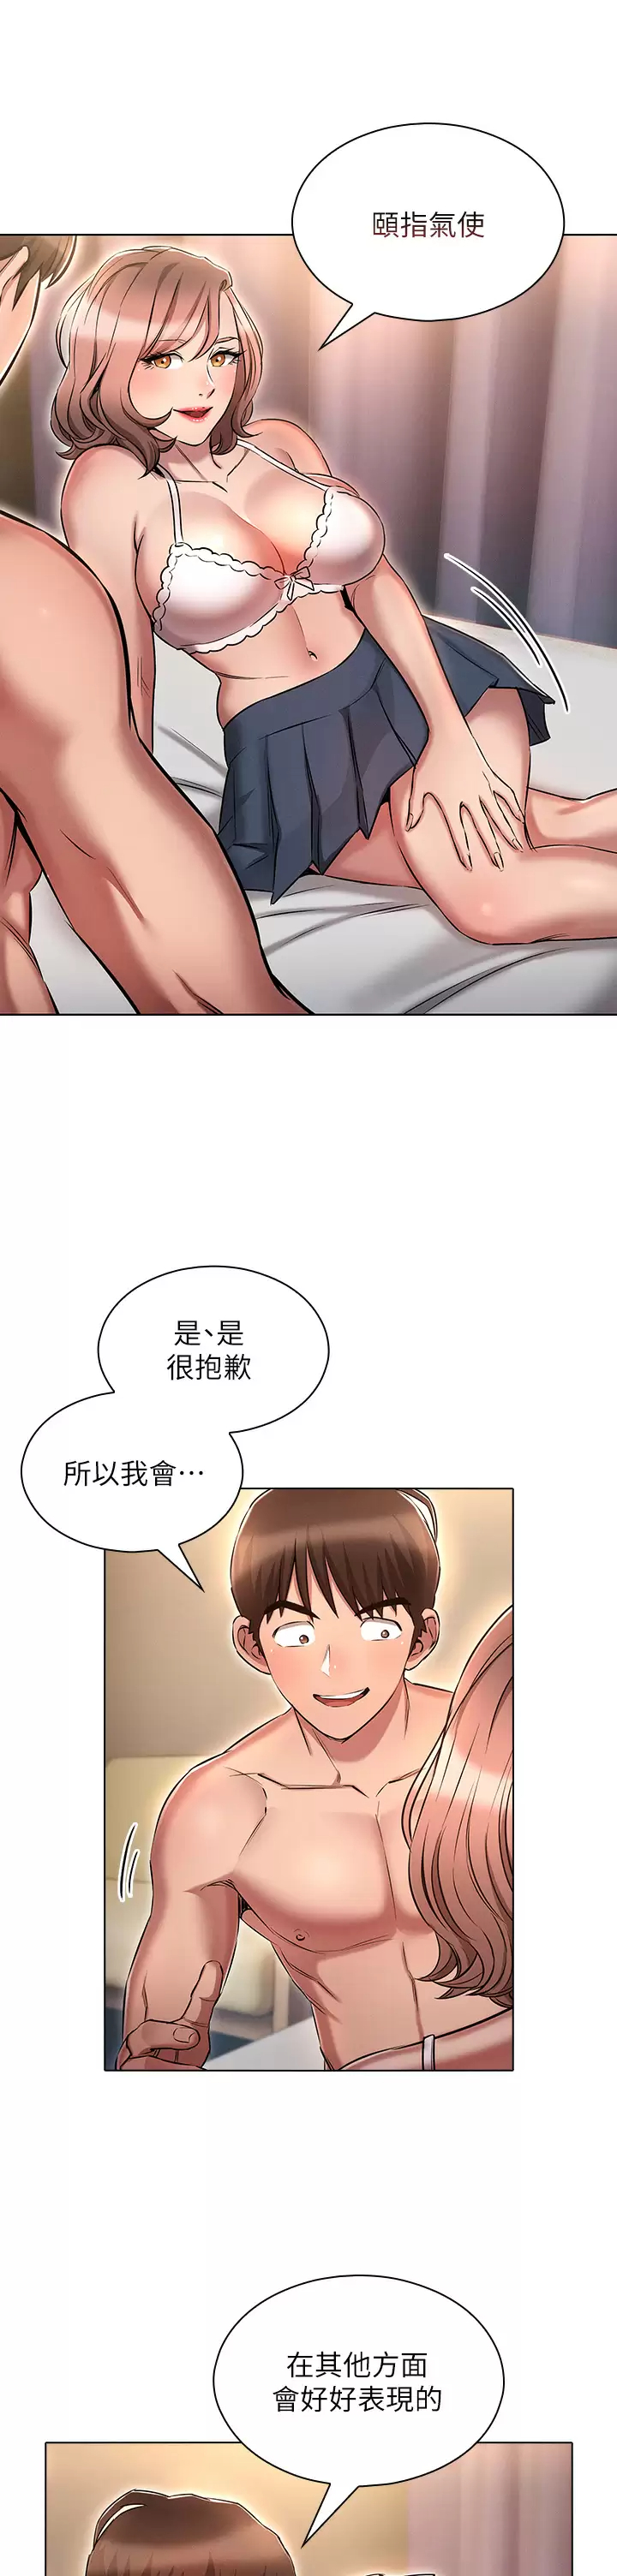 韩国污漫画 魯蛇的多重宇宙 第14话 挑战窗边暴露性爱! 5